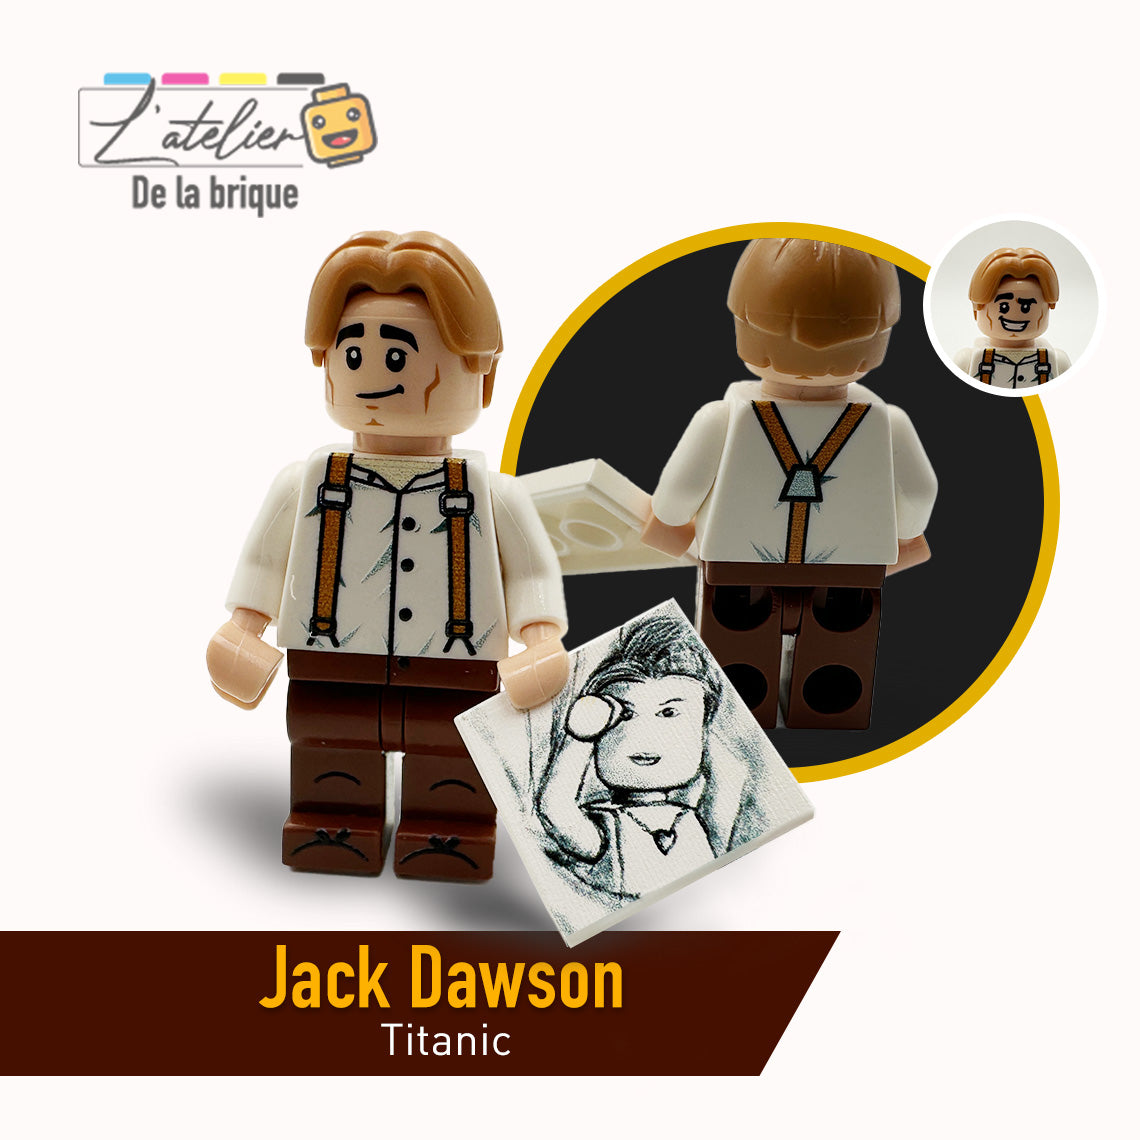 Jack Dawson custom